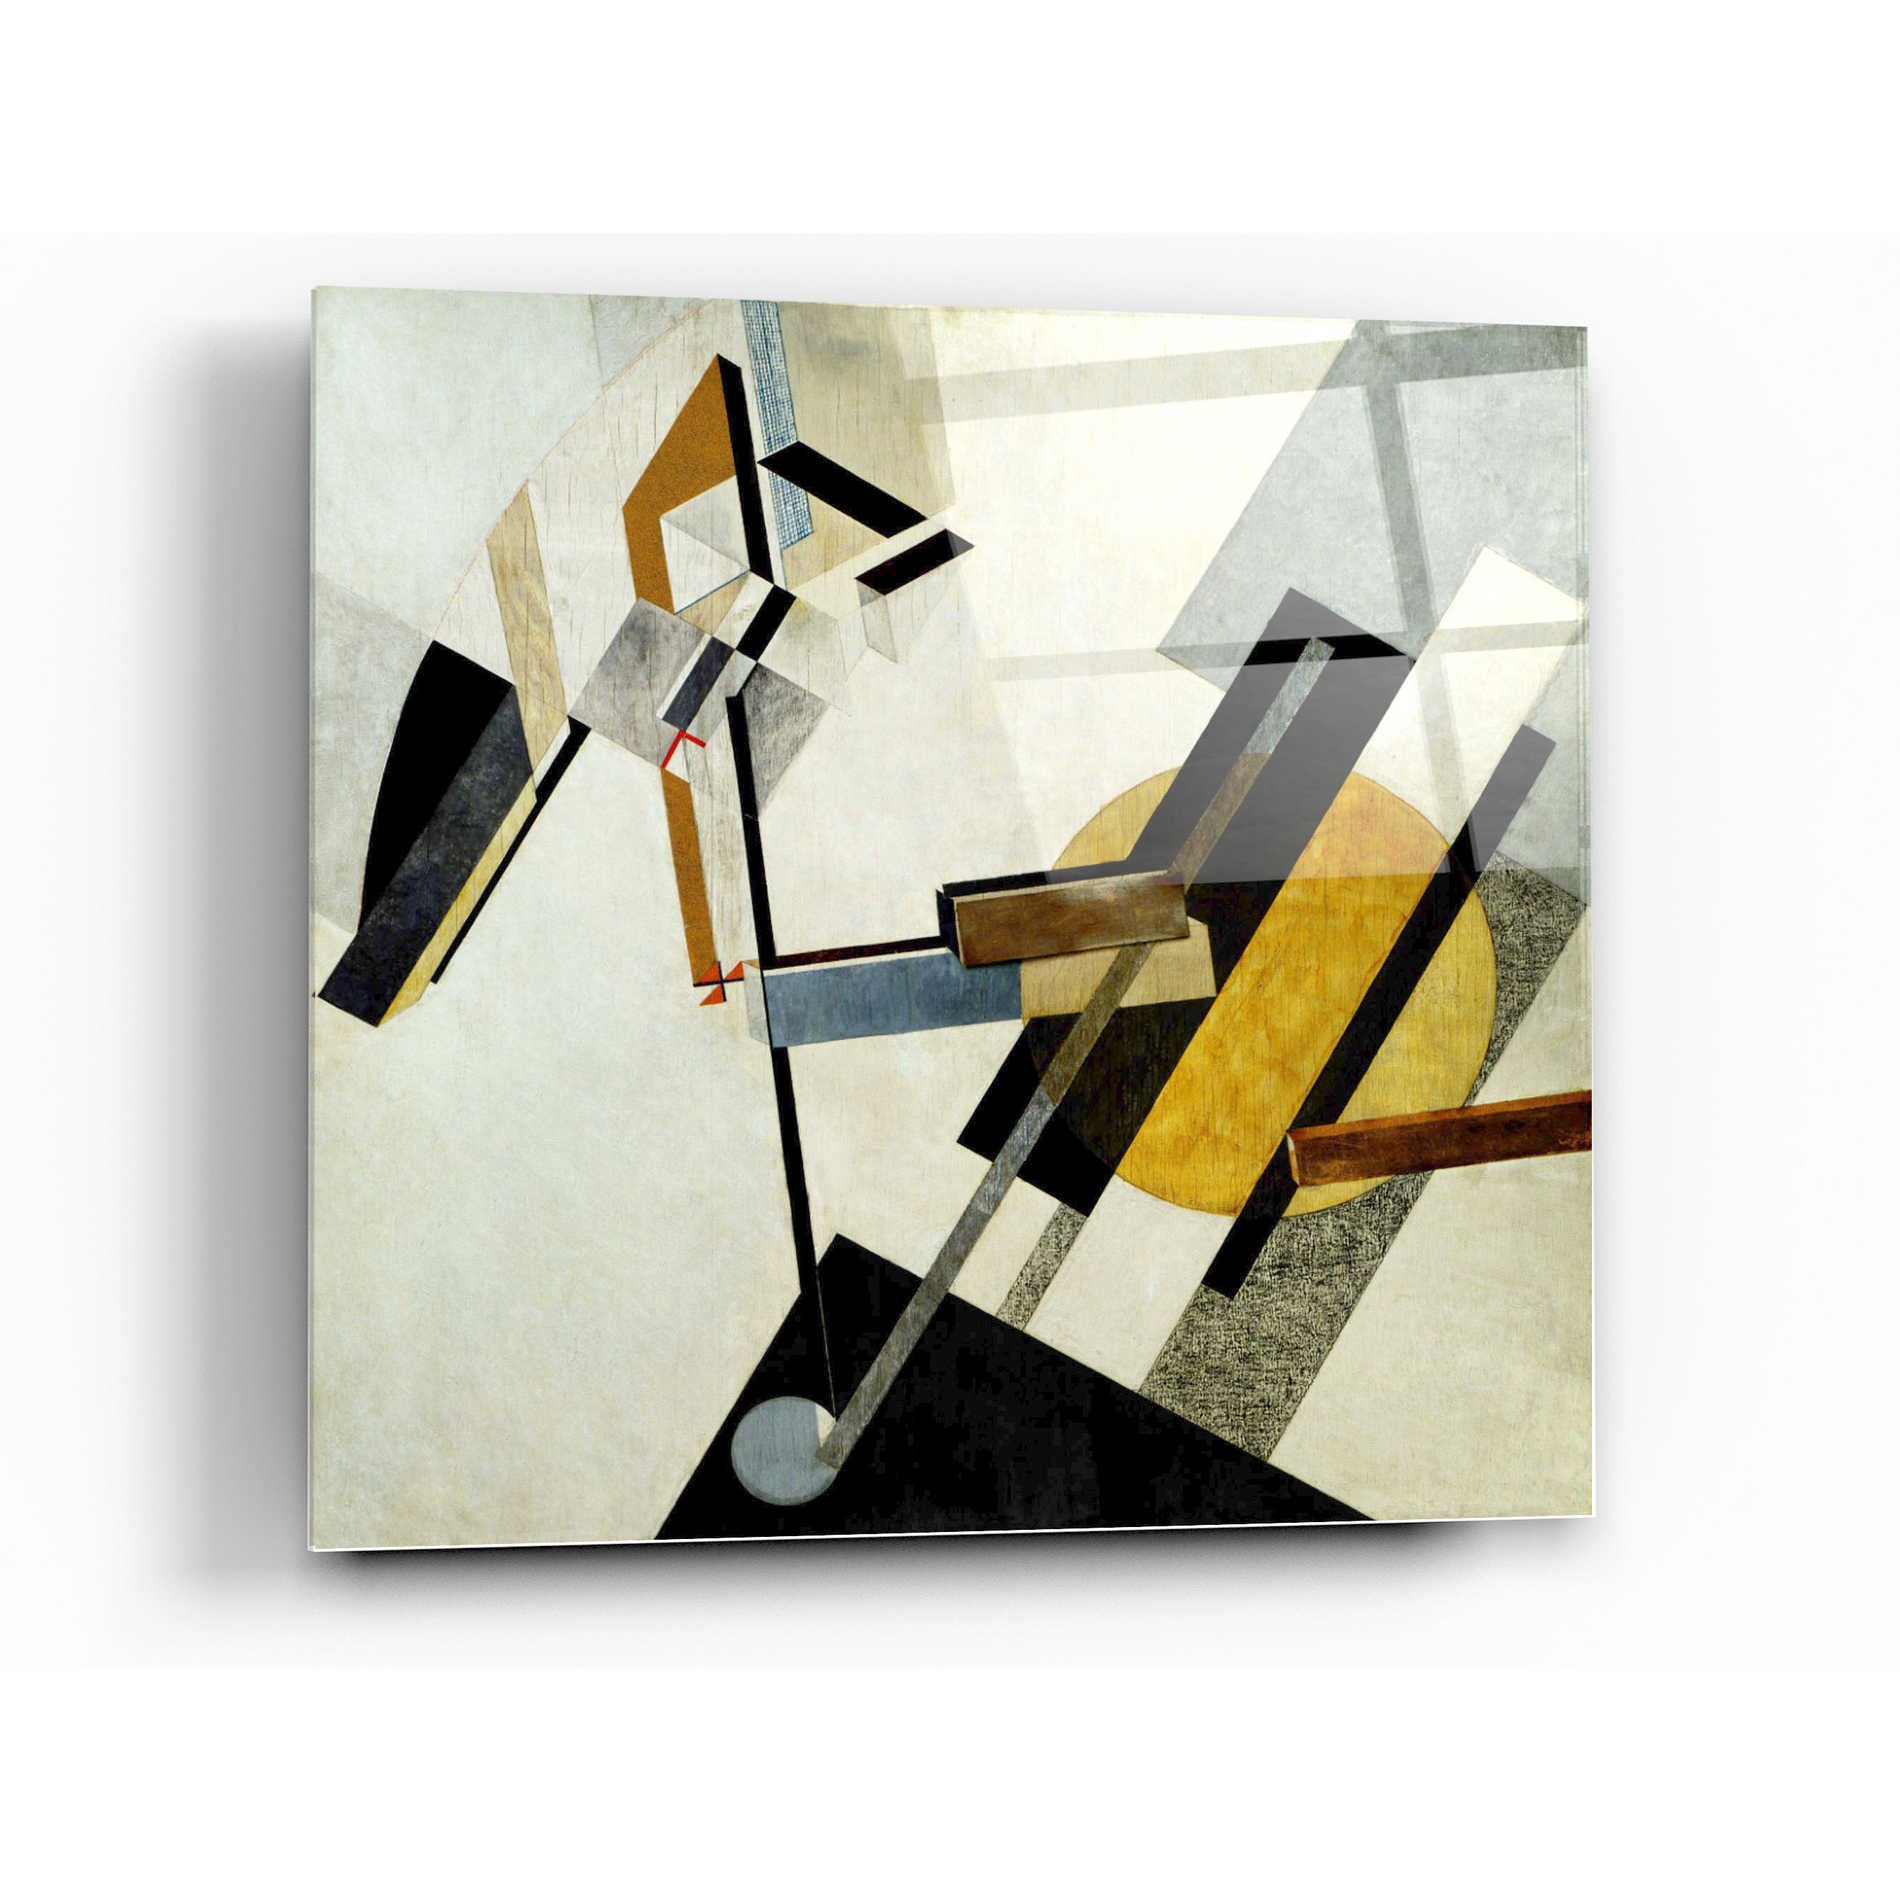 Epic Art 'Proun 19D' by El Lissitzky Acrylic Glass Wall Art,36x36